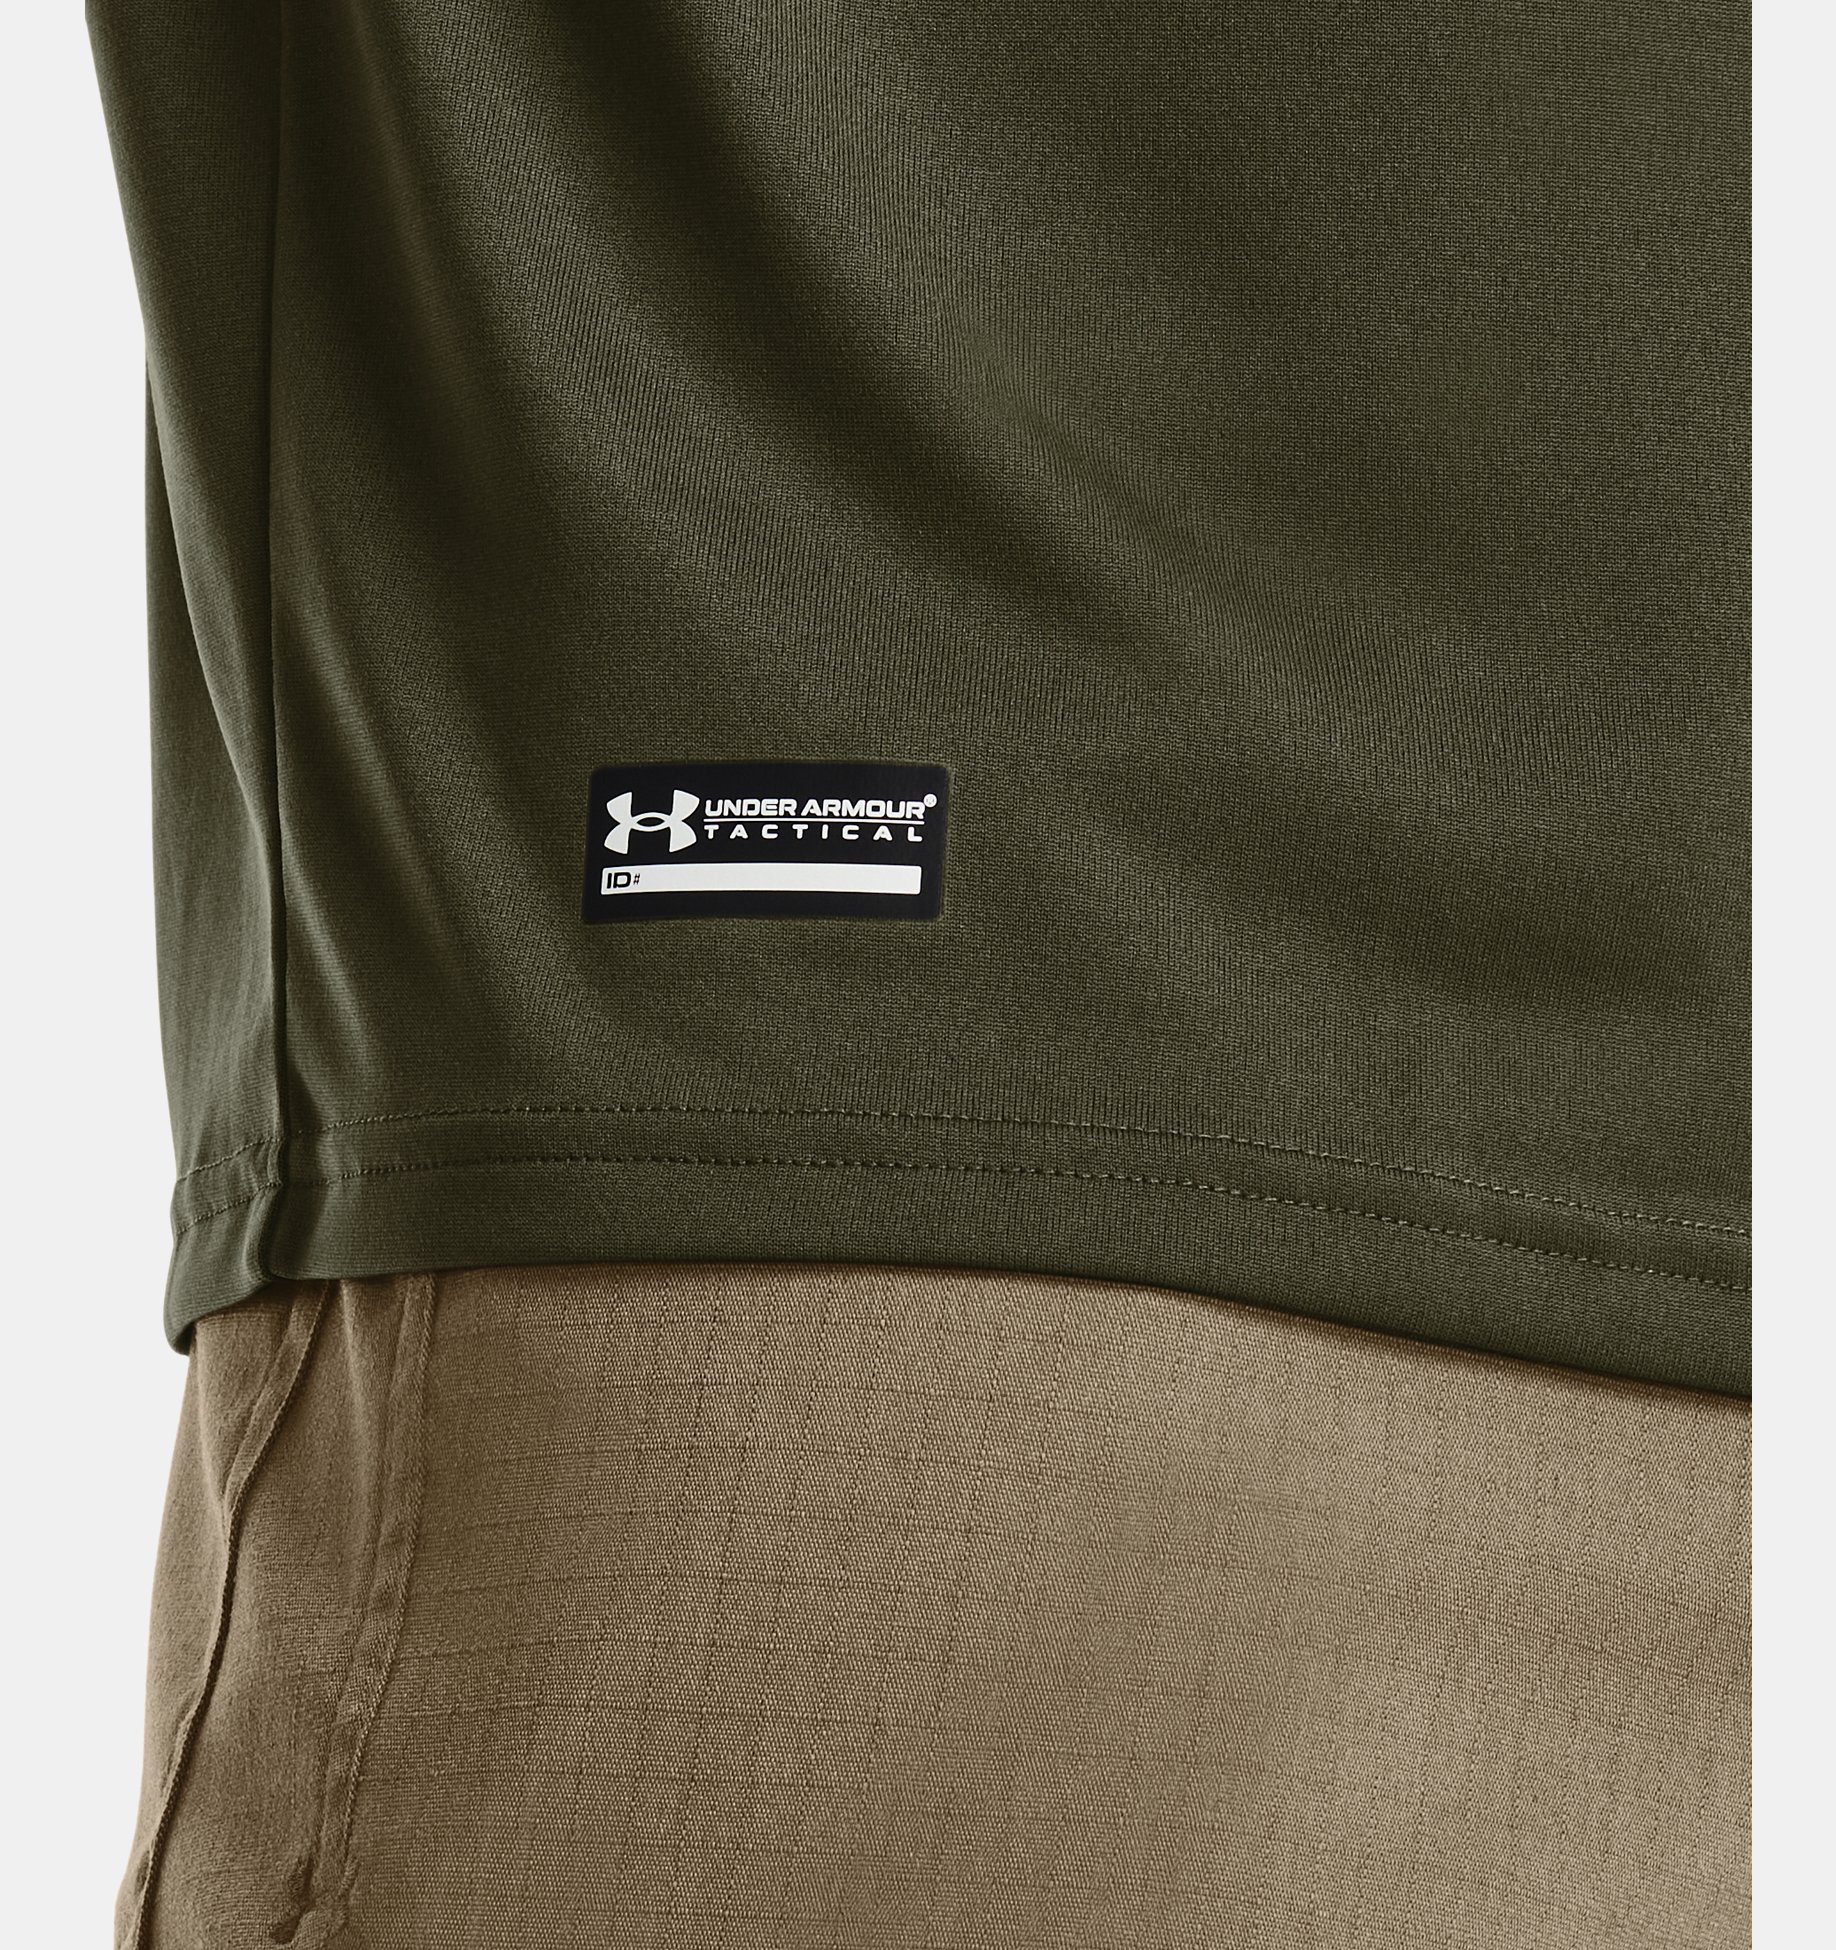 Under Armour 1005684 Men's UA Tactical Tech Tee Short Sleeve T-Shirt Size S-3XL 